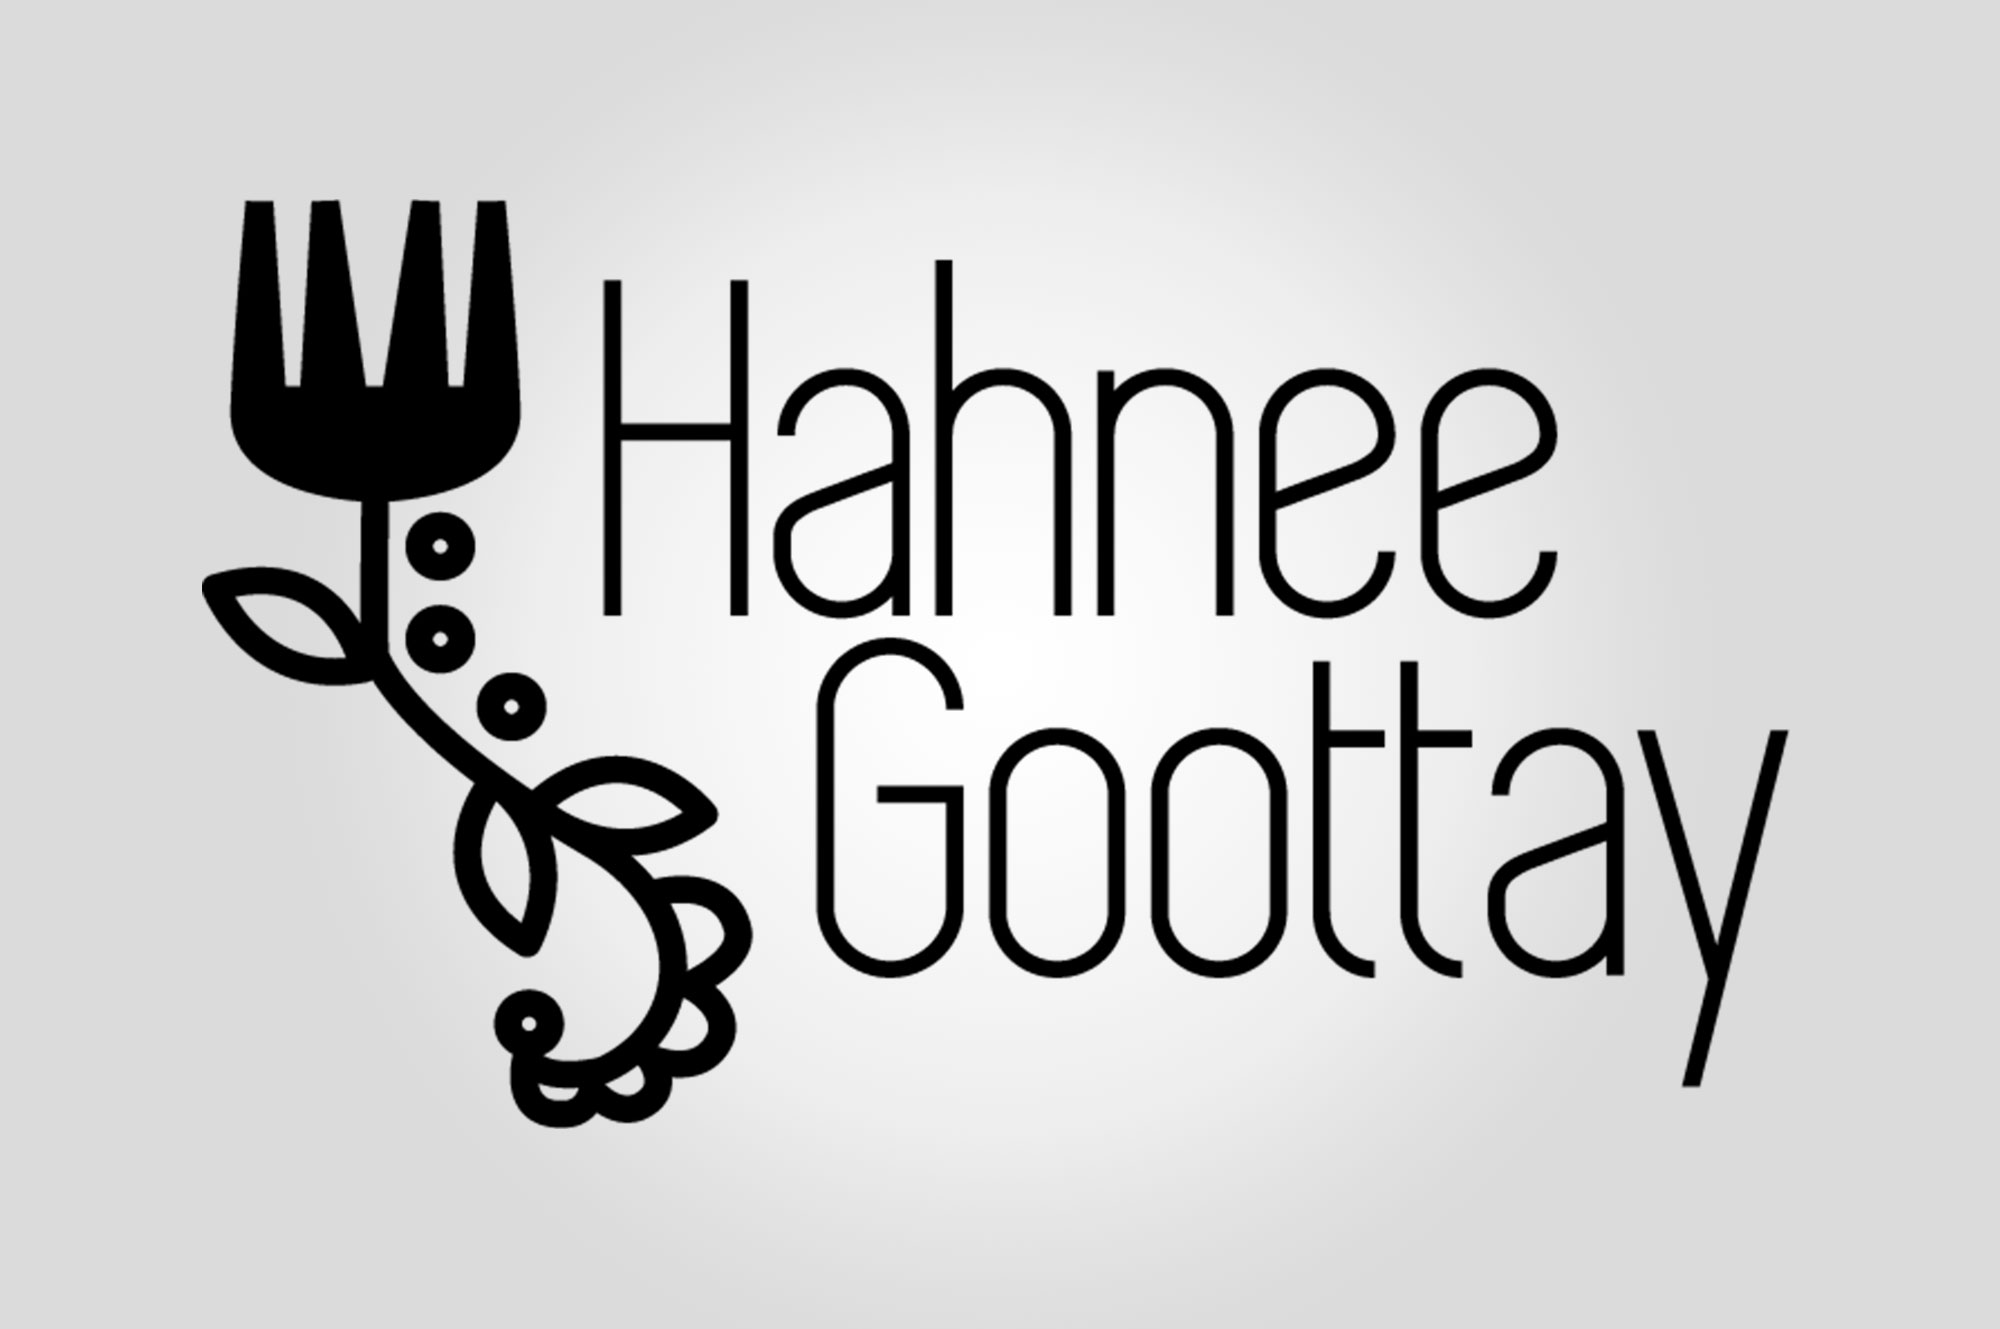 Hahnee Goottay